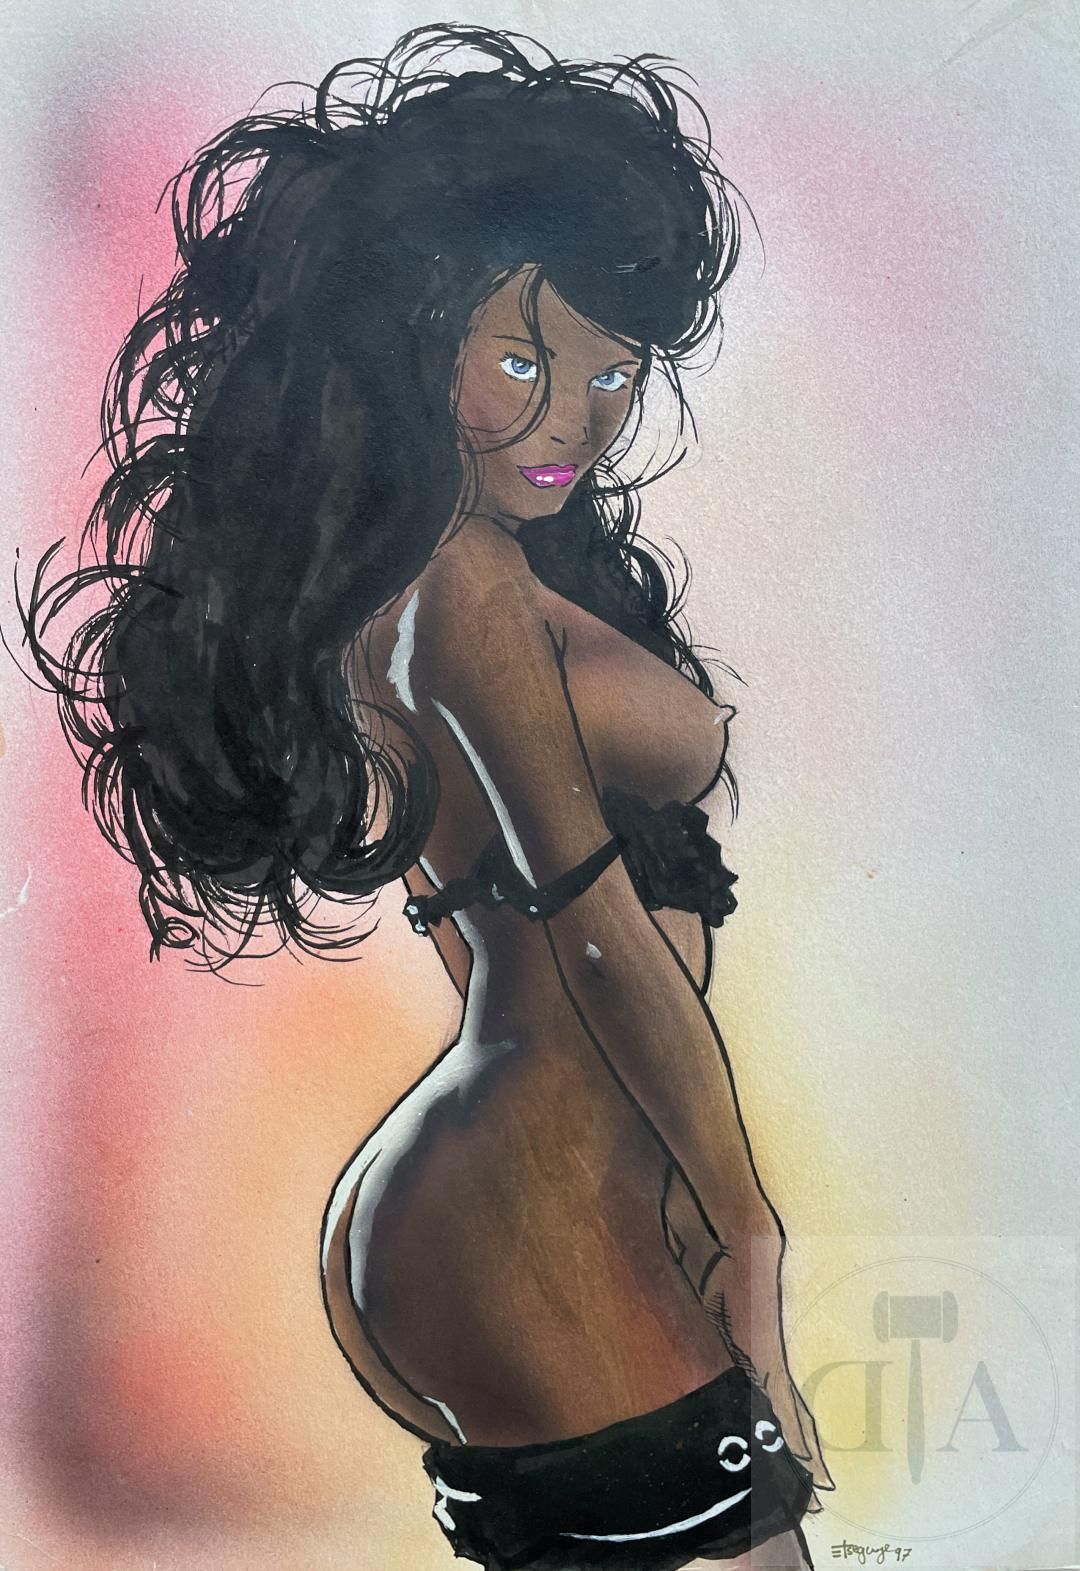 Null Autor no identificado/Dibujo original que ilustra una mujer desnuda con una&hellip;